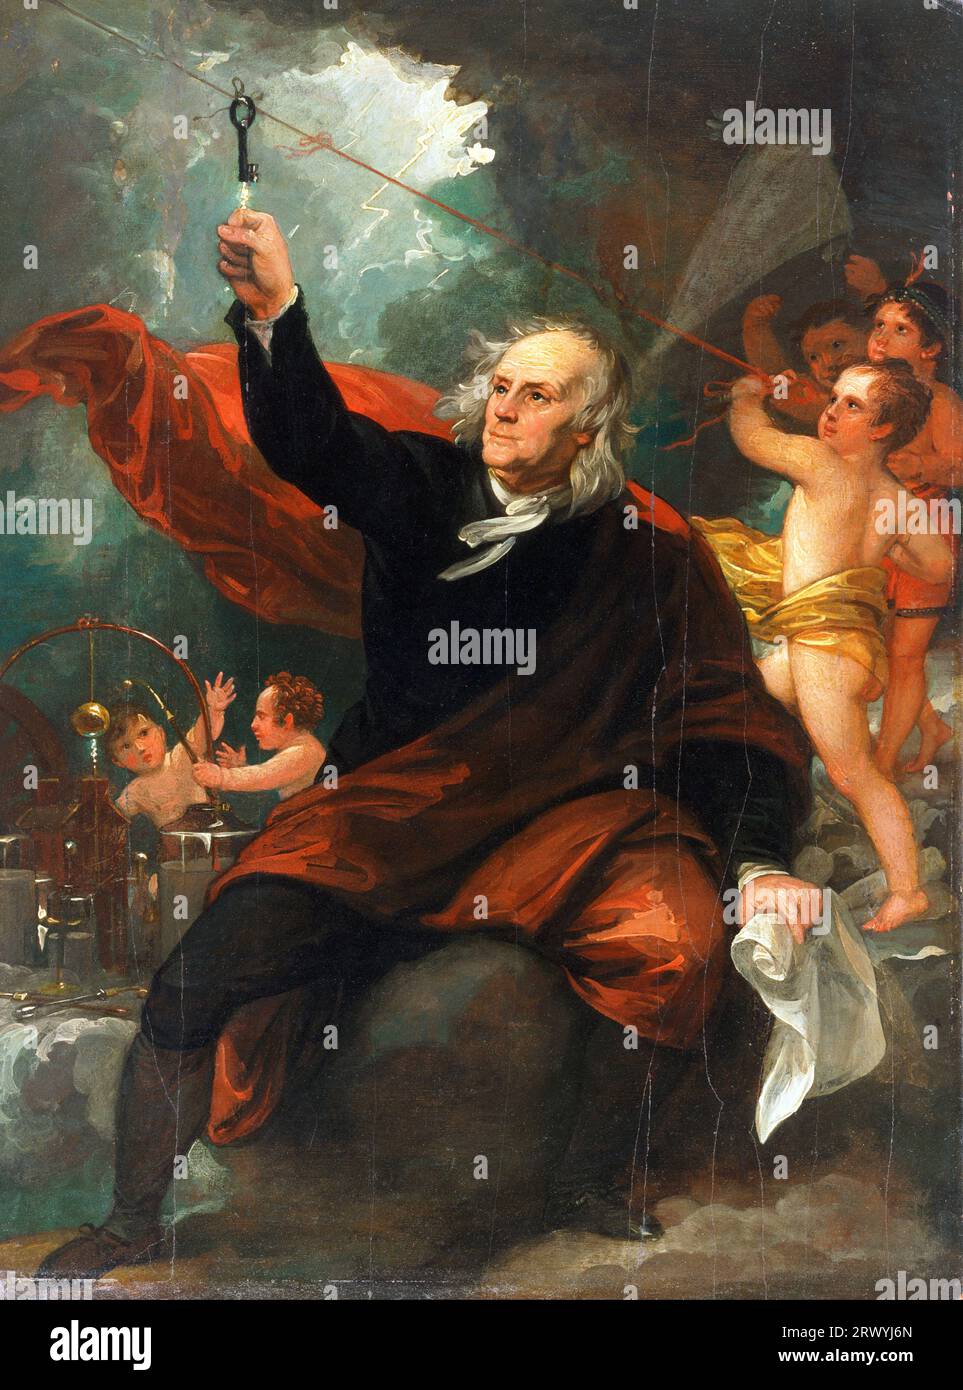 Benjamin Franklin dessiner l'électricité du ciel, 1816, peinture de Benjamin West. Benjamin Franklin (1706 – 1790) Père fondateur des États-Unis d’Amérique Banque D'Images